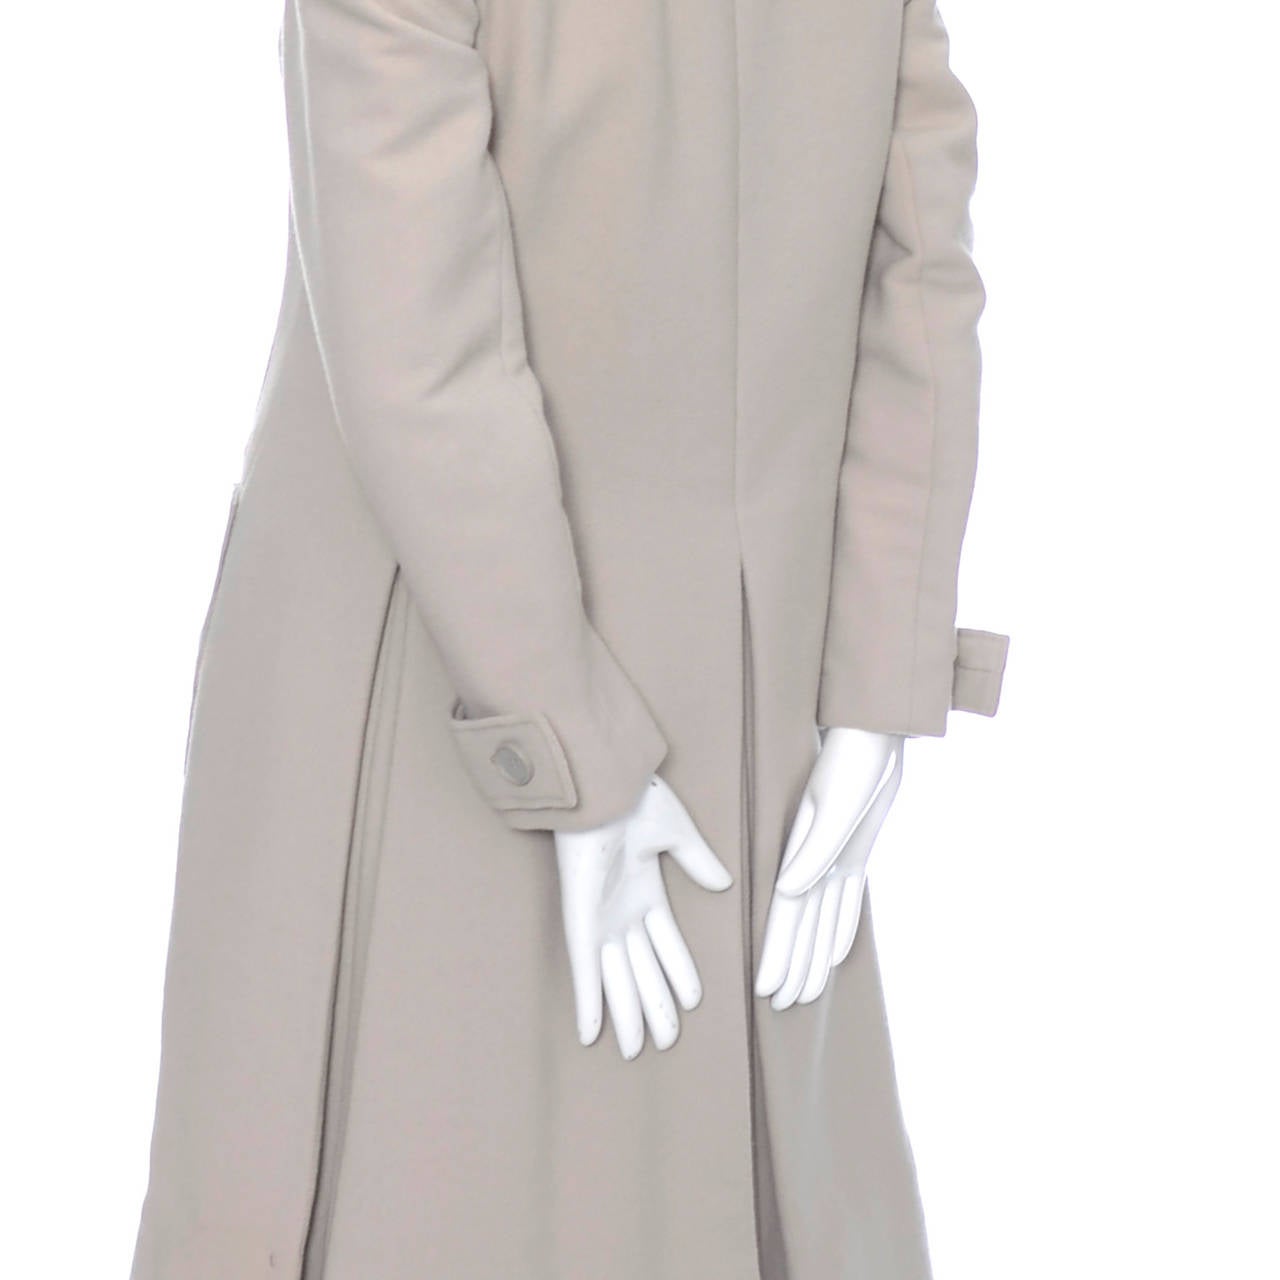 1960s Geoffrey Beene Vintage Coat Dress Saks Fifth Avenue Never Worn 2